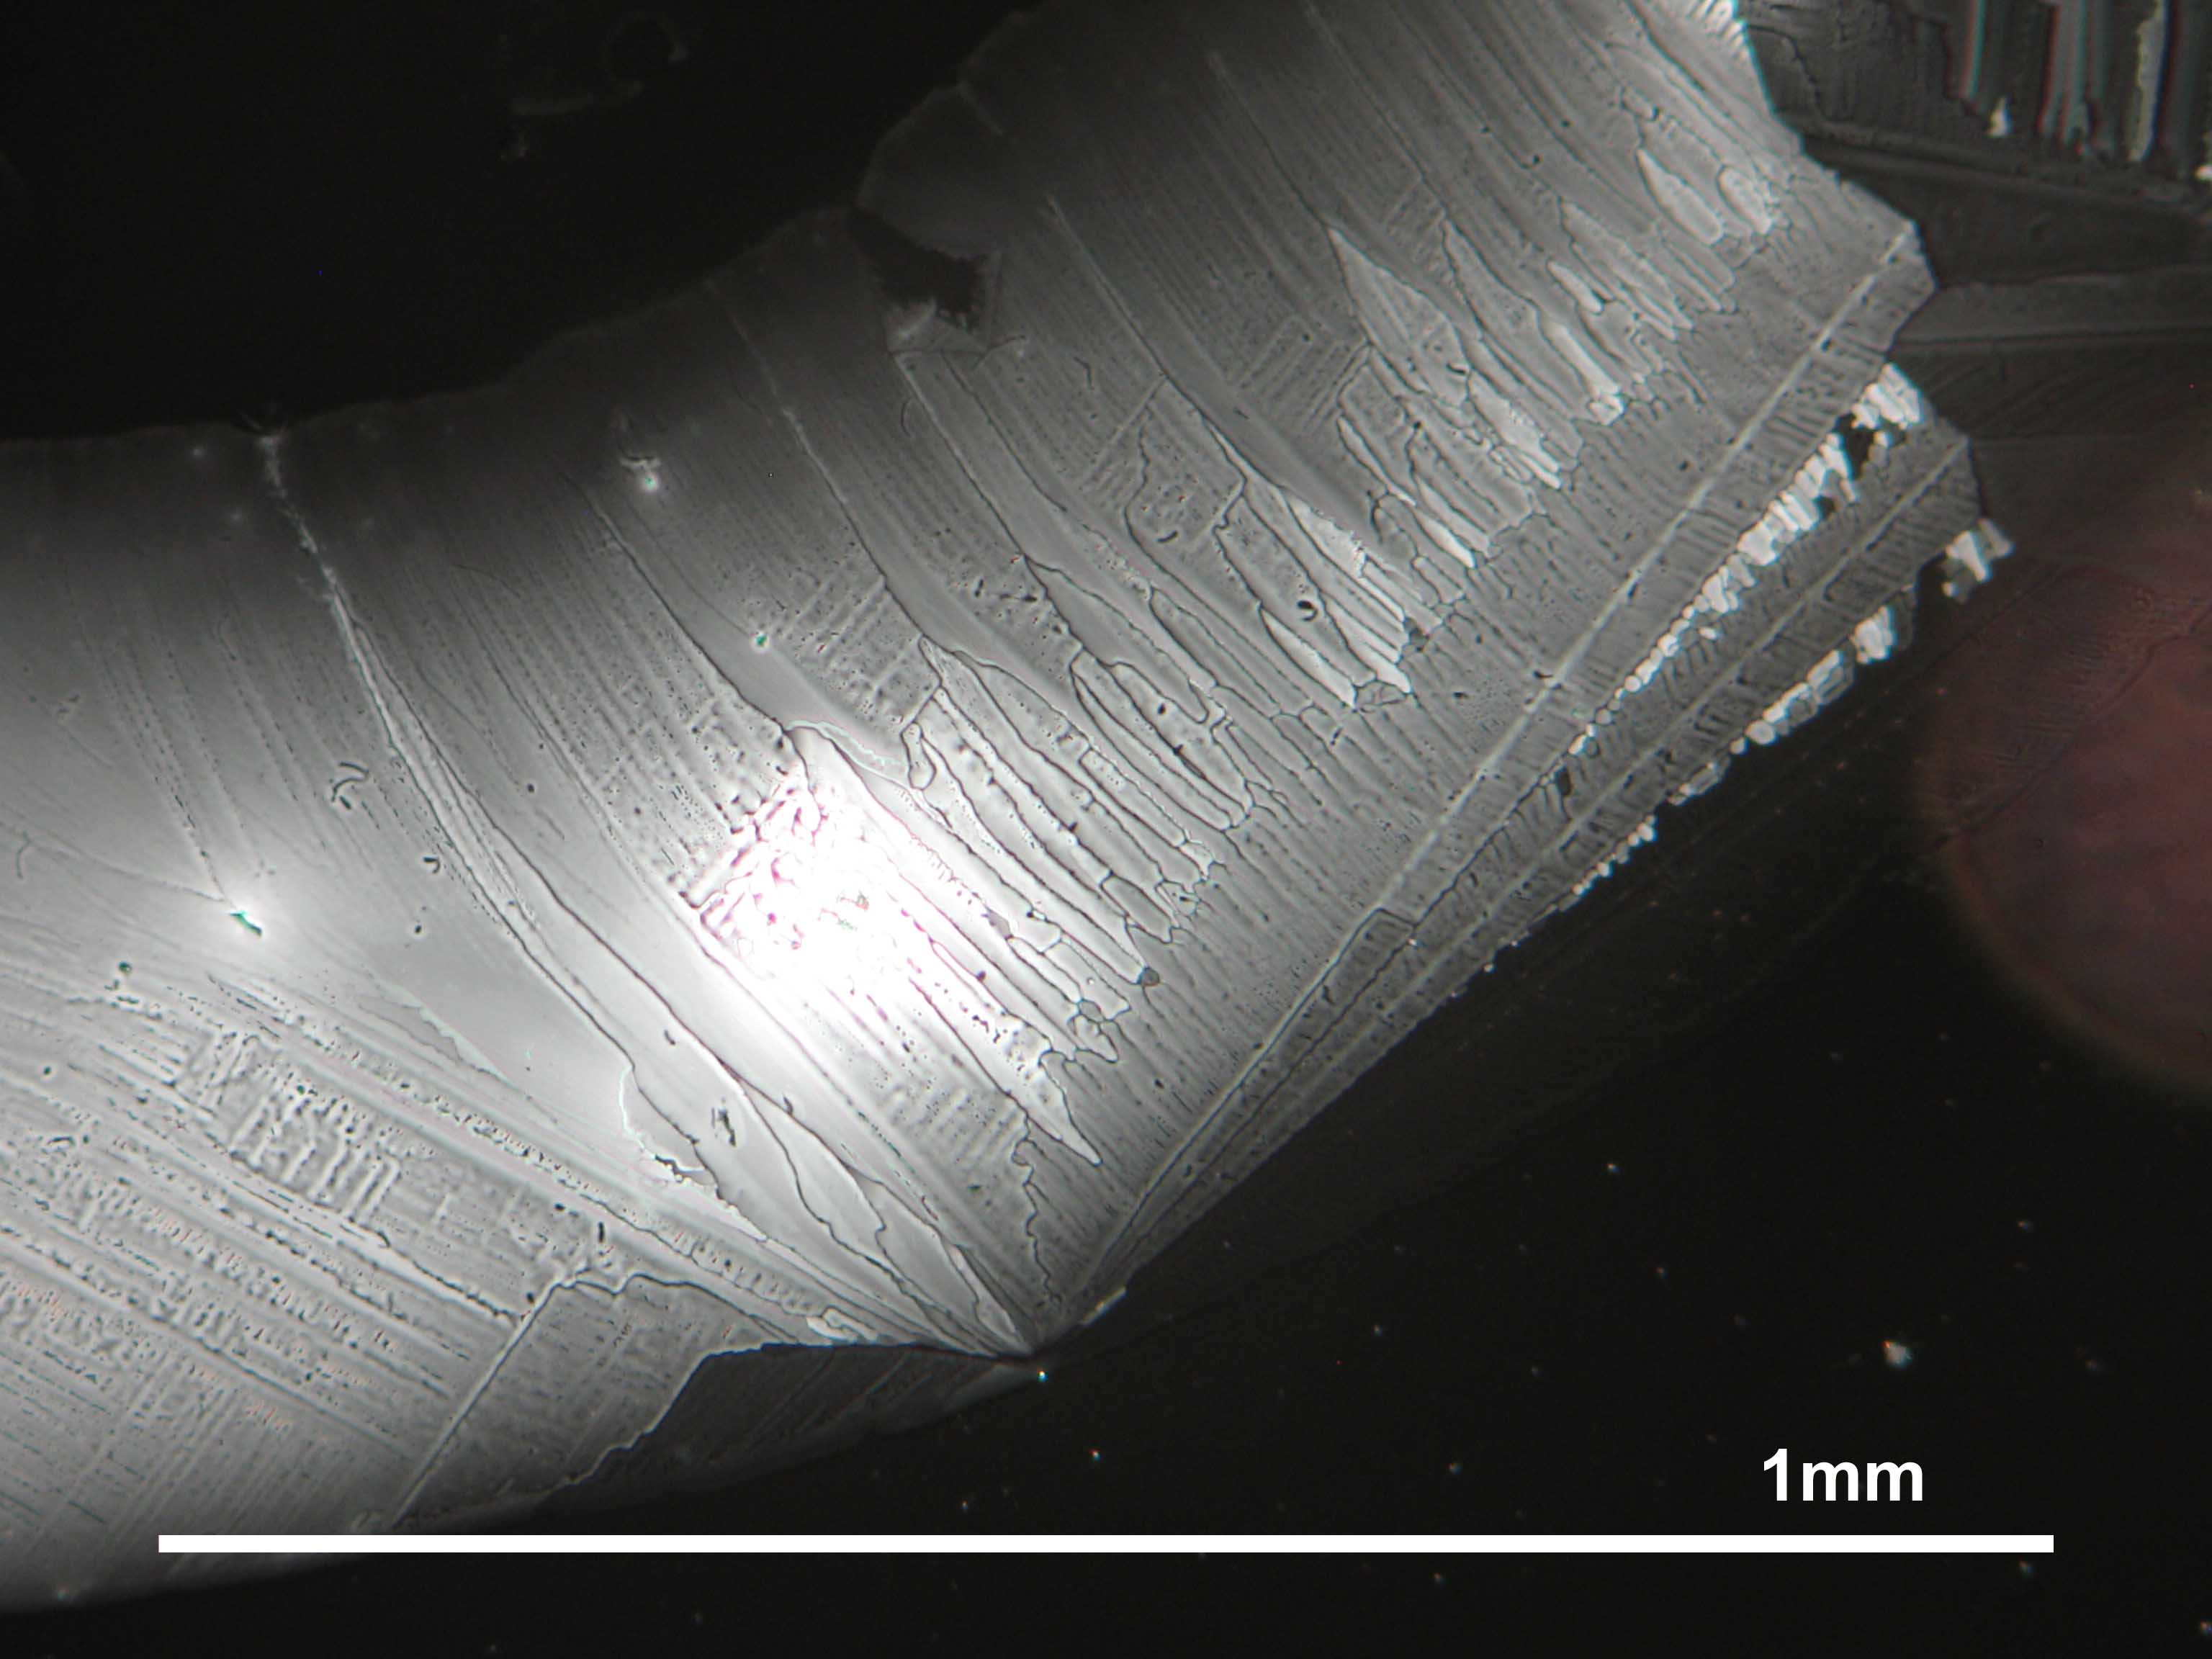 Magnesiumsulfat, auskristallisiert aus wässriger Lösung auf einem Objektträger